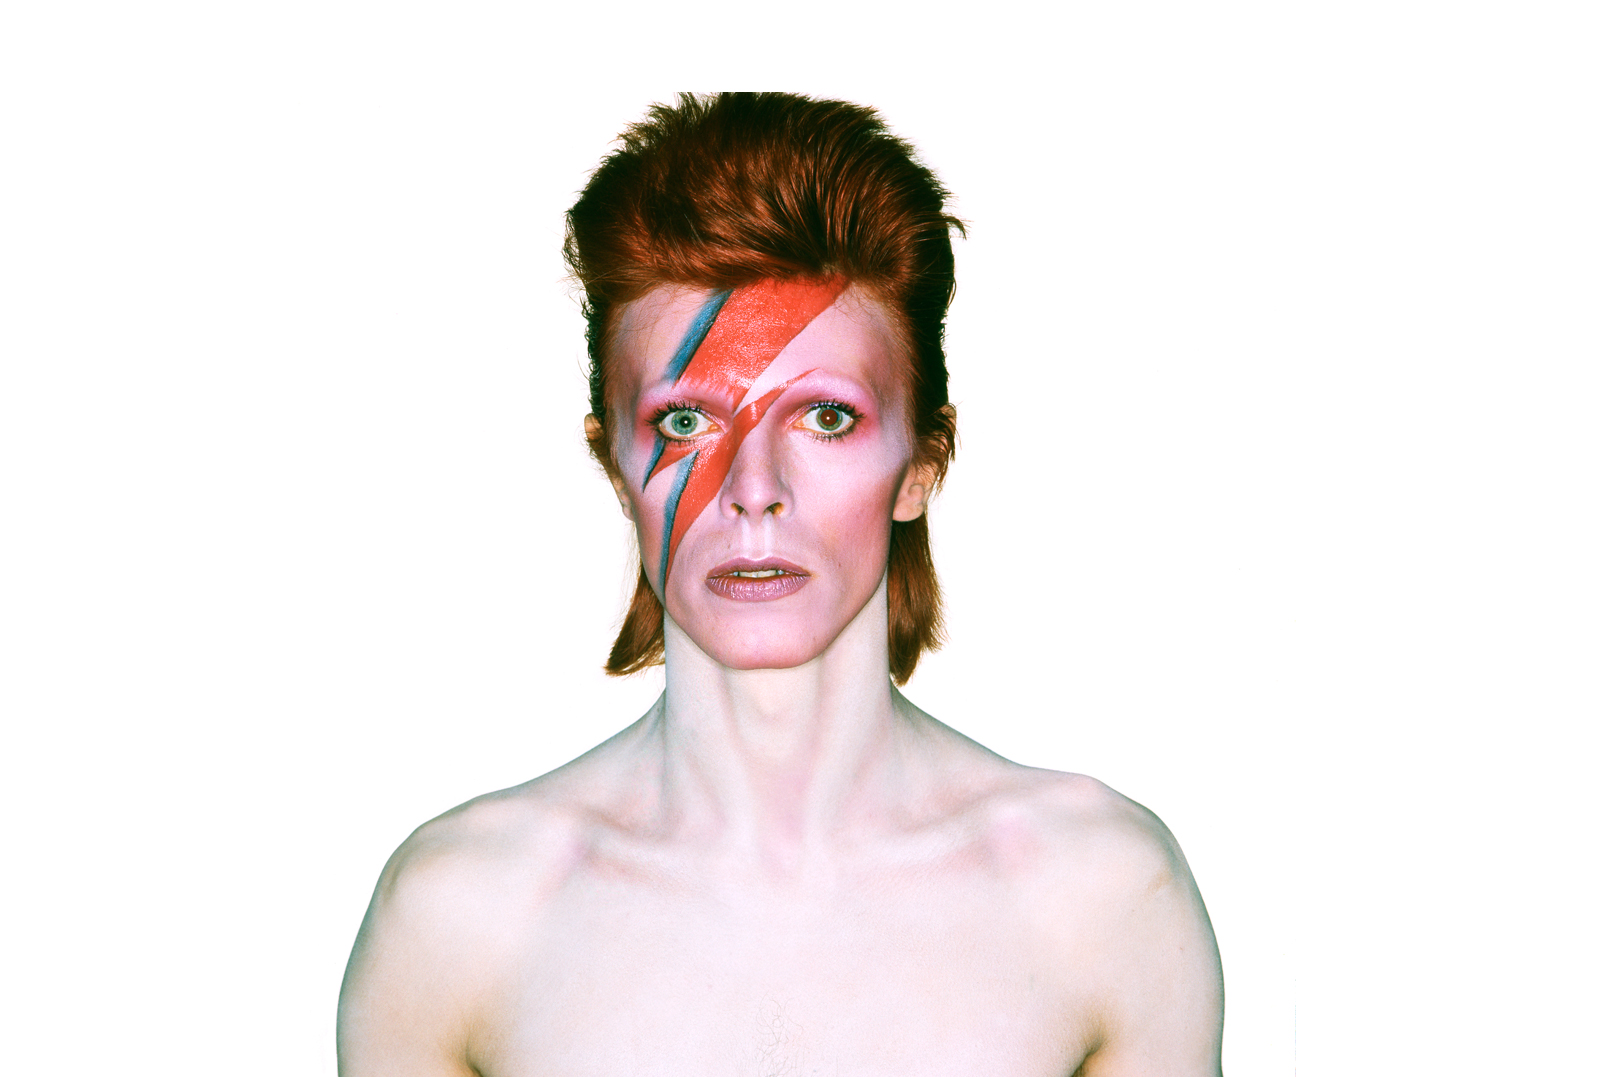 Black Star (Especial de David Bowie)